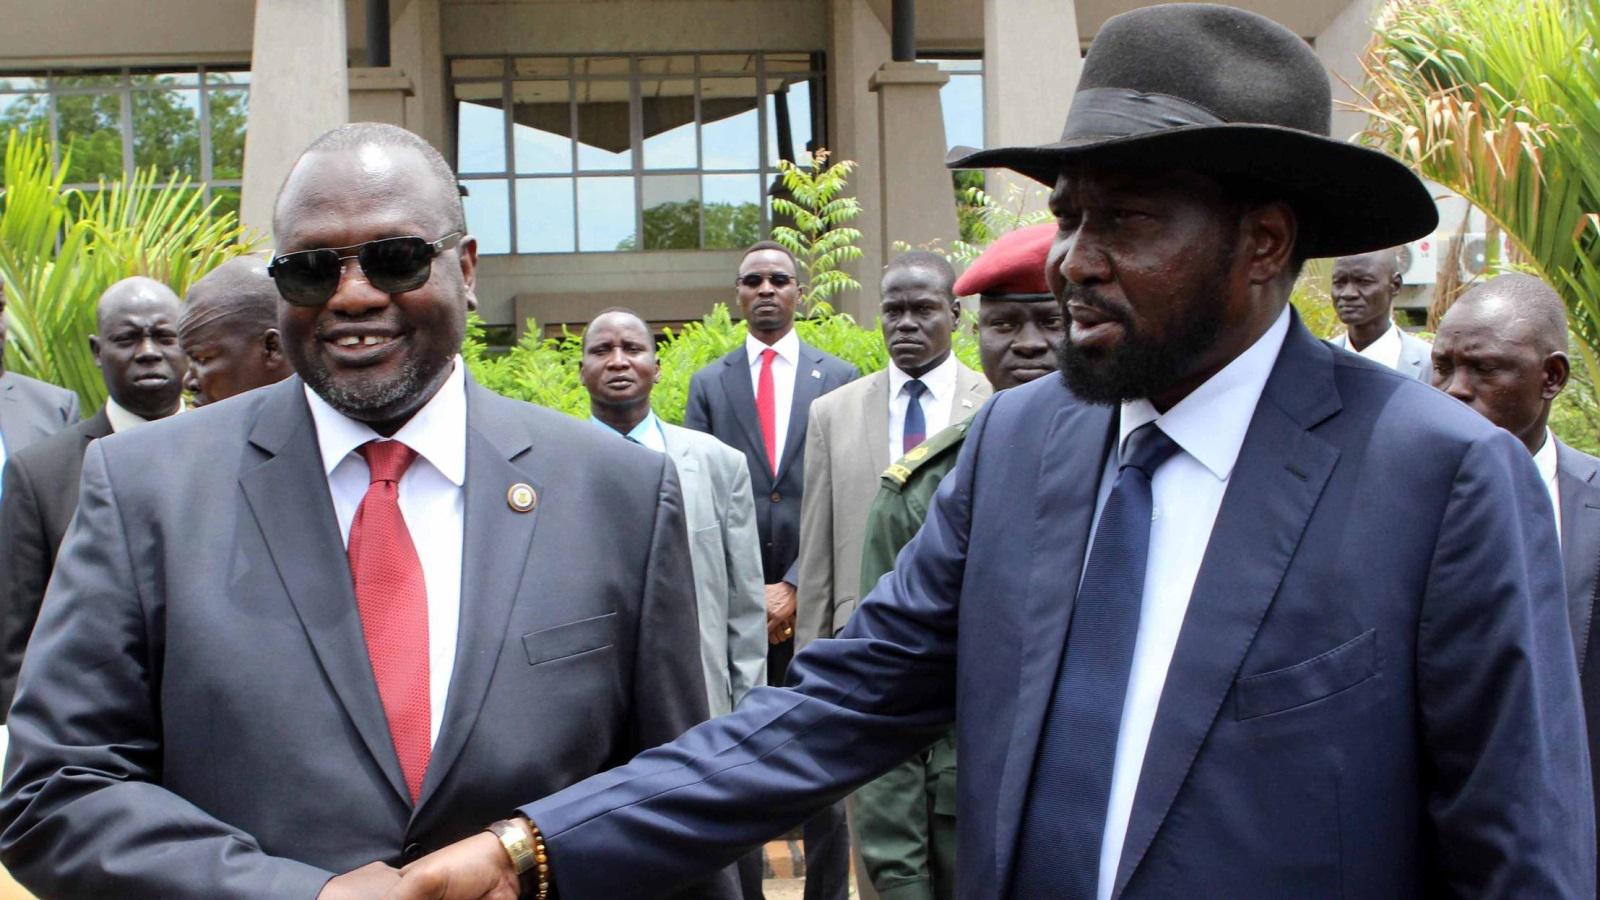 رئيس جنوب السودان سيلفاكير وزعيم المتمردين رياك مشار